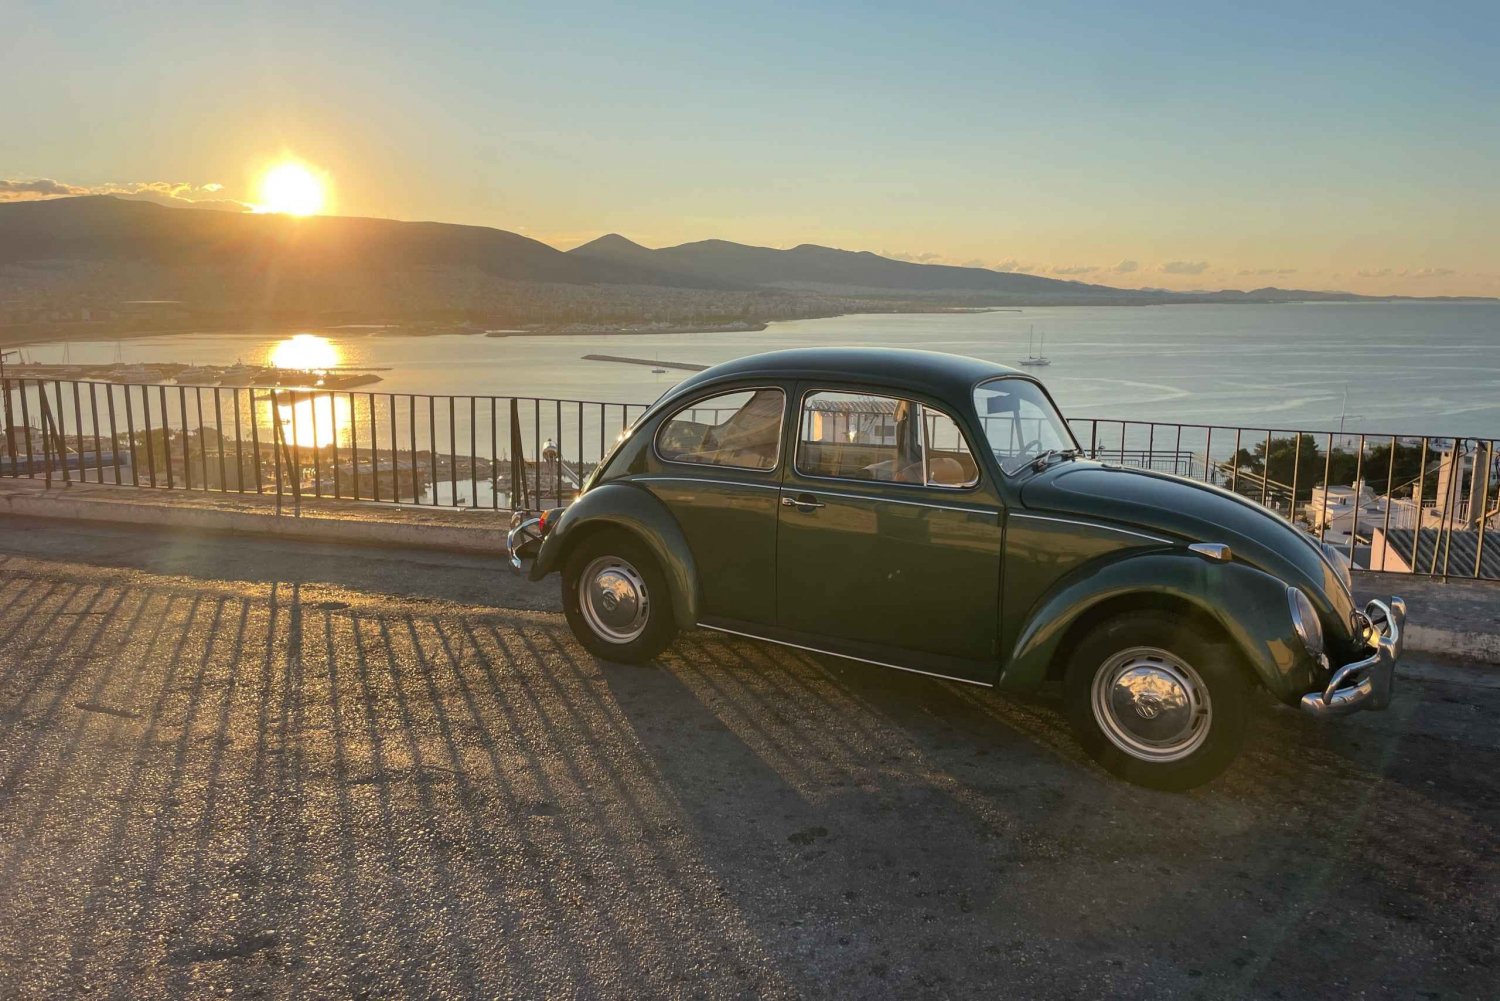 Atenas: Recorrido fotográfico por la Riviera en un Volkswagen Escarabajo de época